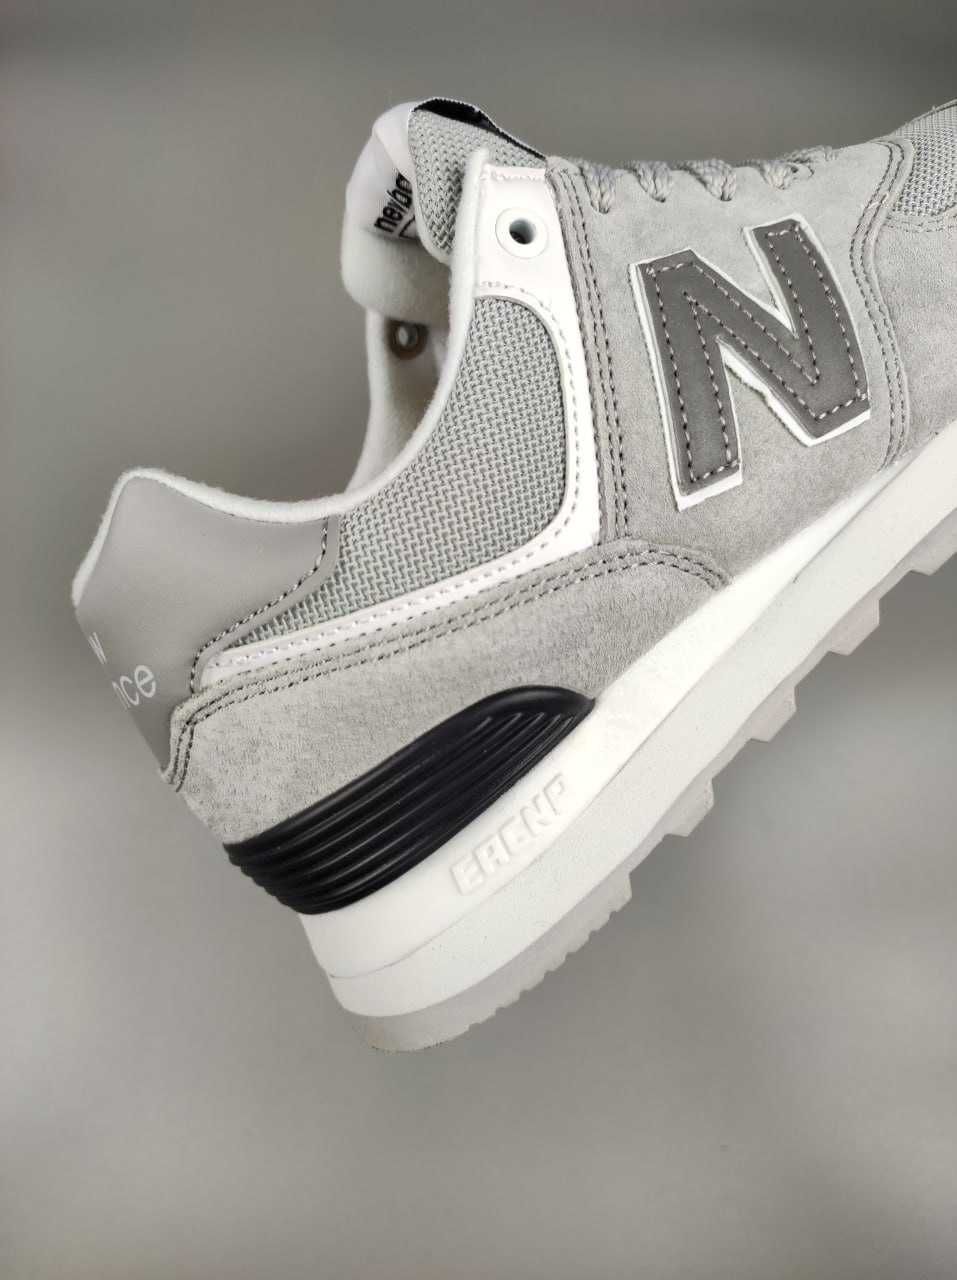 Повсякденні але якісні кросівки New Balance 574 Light Gray